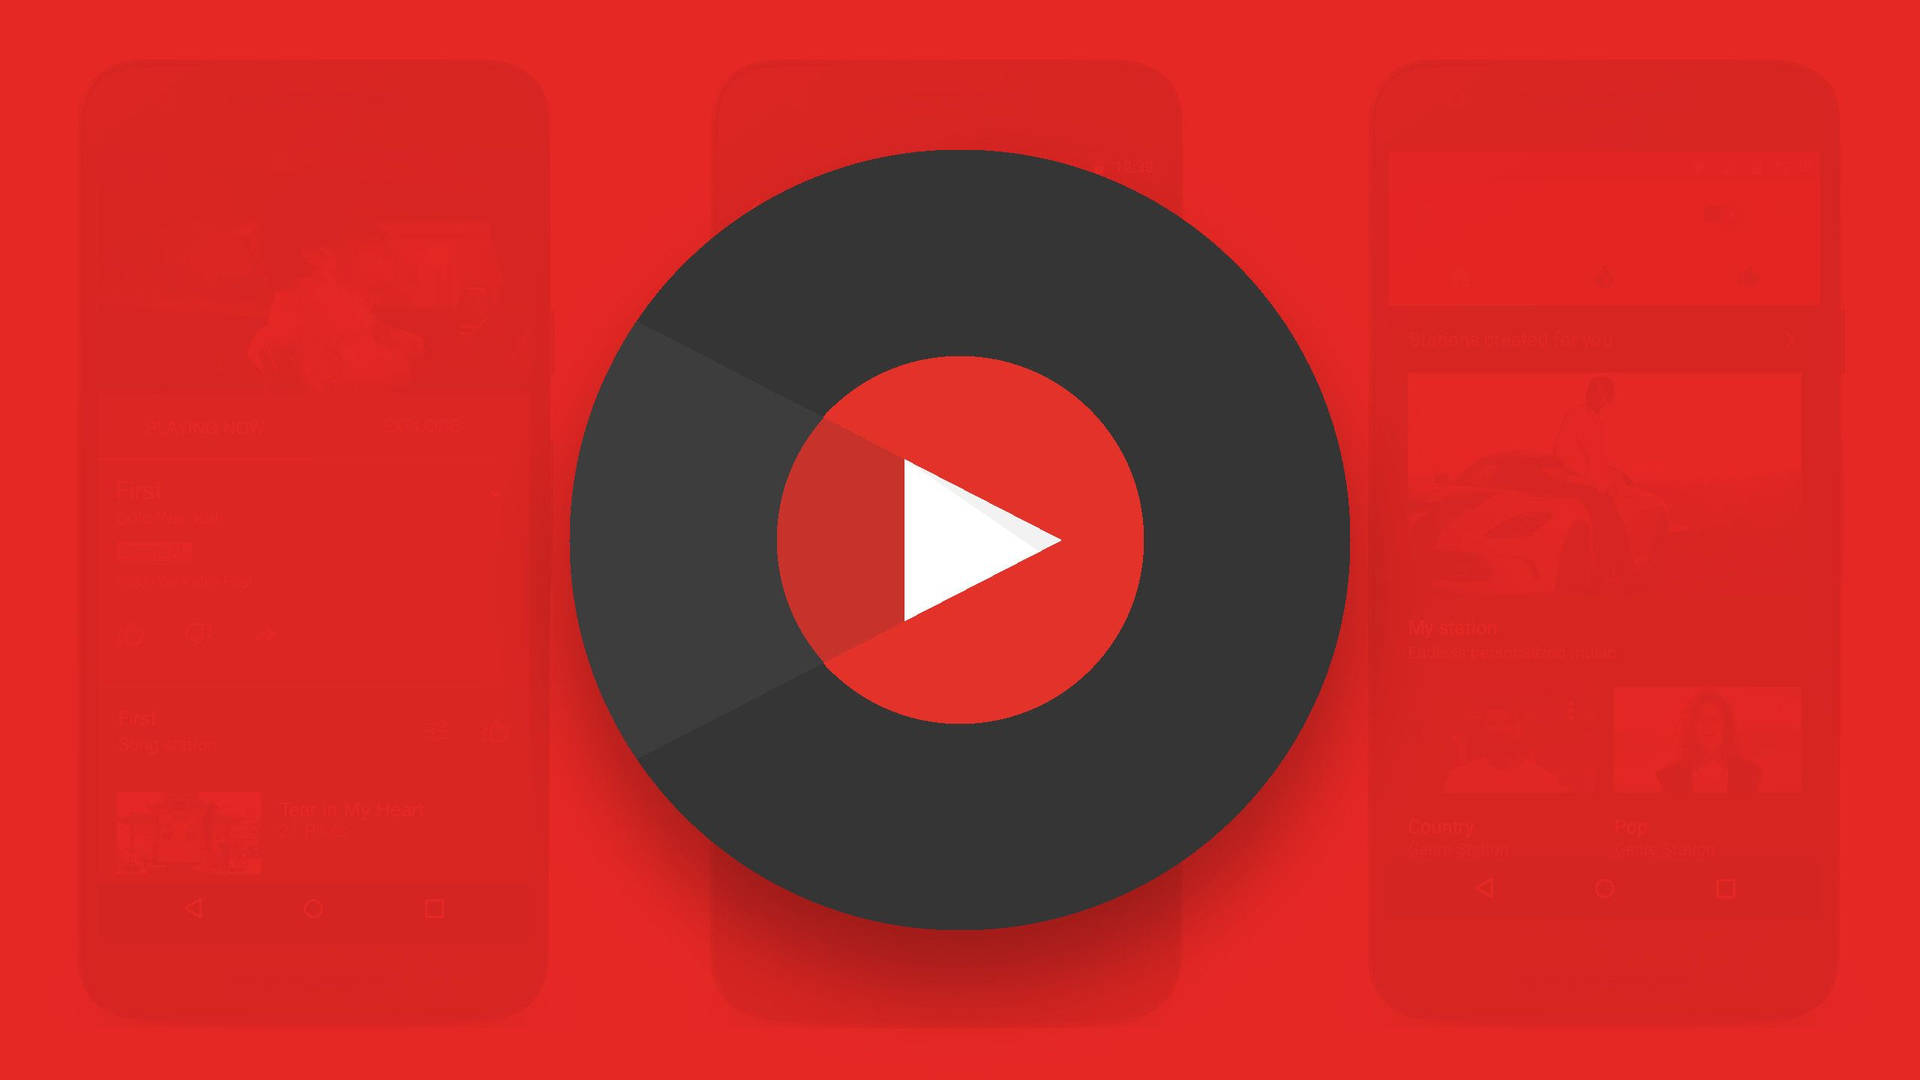 Logotipode Youtube Con Botón De Reproducción Dentro De Un Círculo Fondo de pantalla